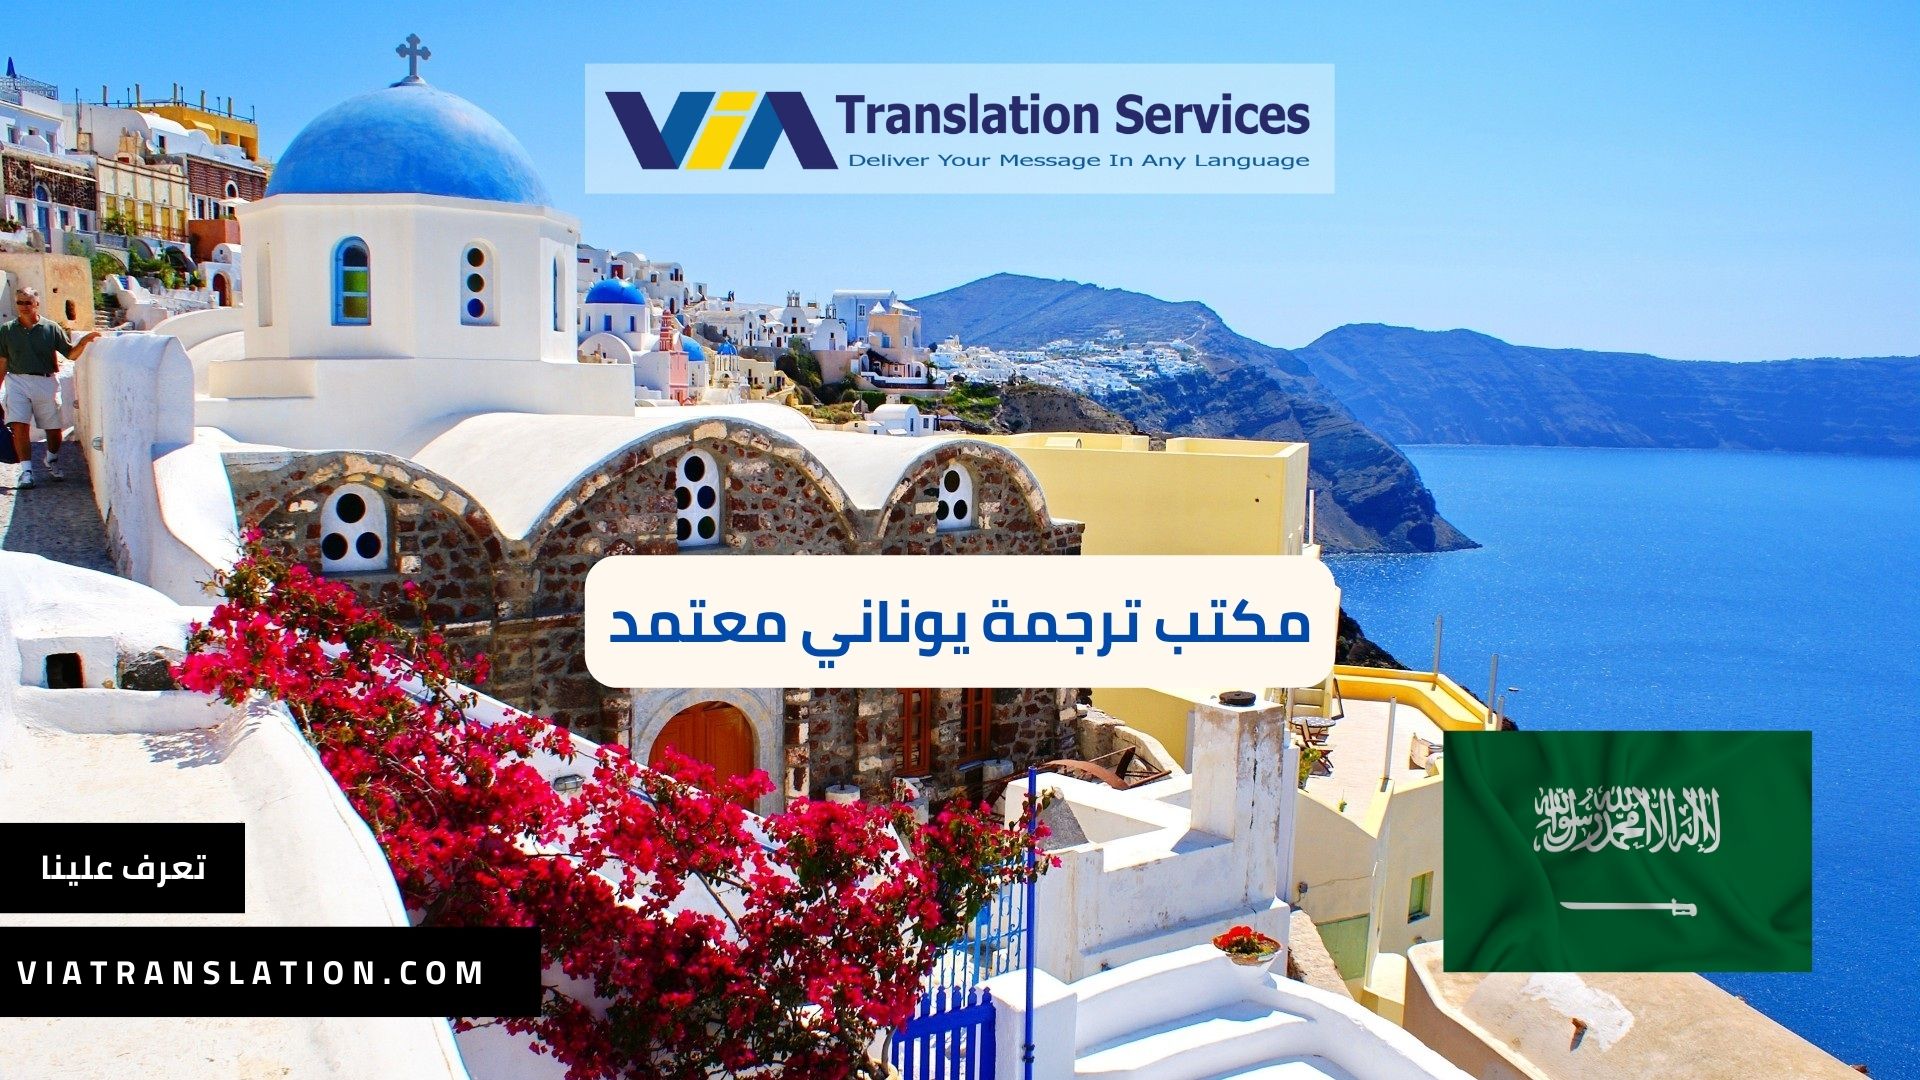 مواصفات أفضل مكتب ترجمة يوناني معتمد في السعودية (1)